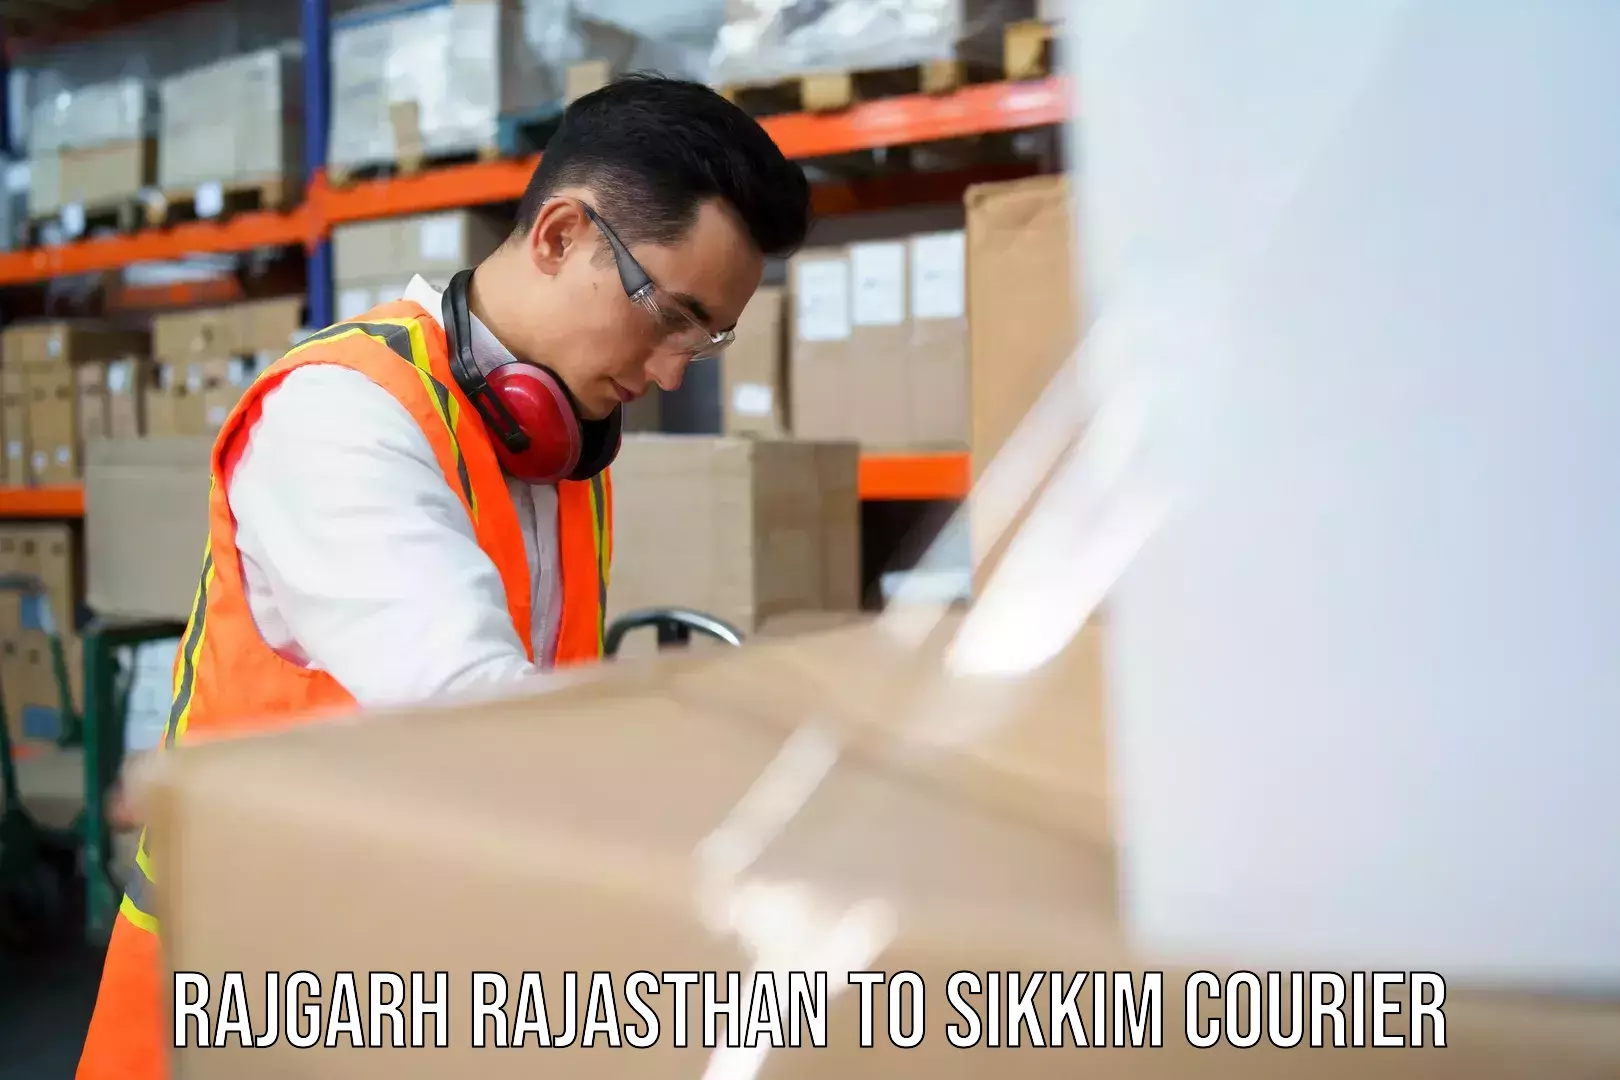 Customer-focused courier Rajgarh Rajasthan to Mangan